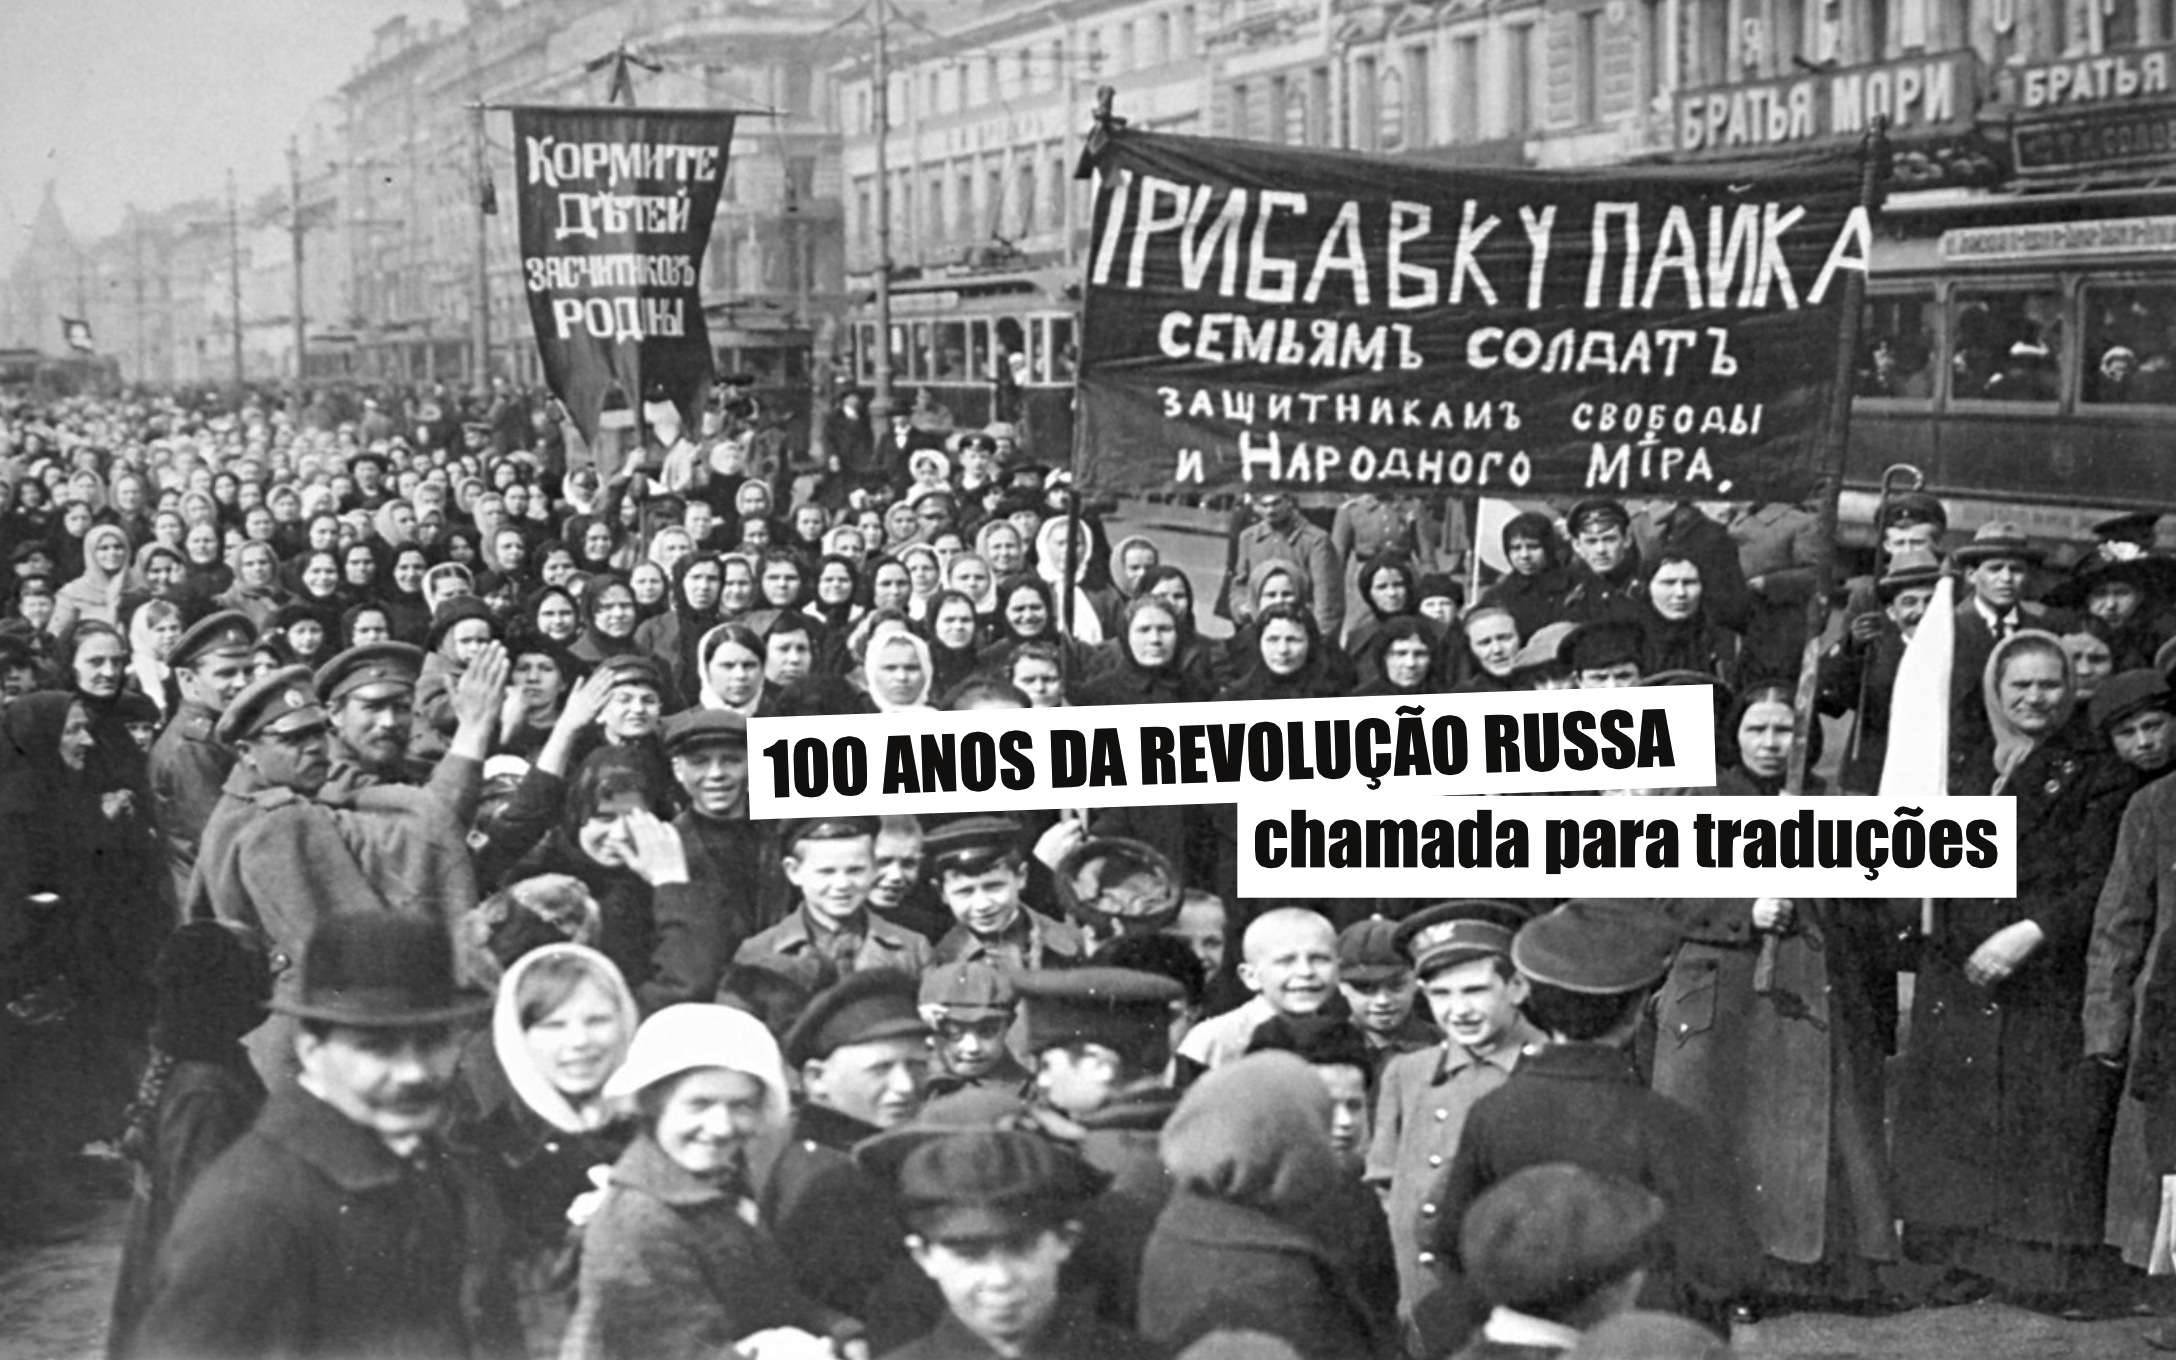 100 anos de Revolução Russa: chamada para traduções